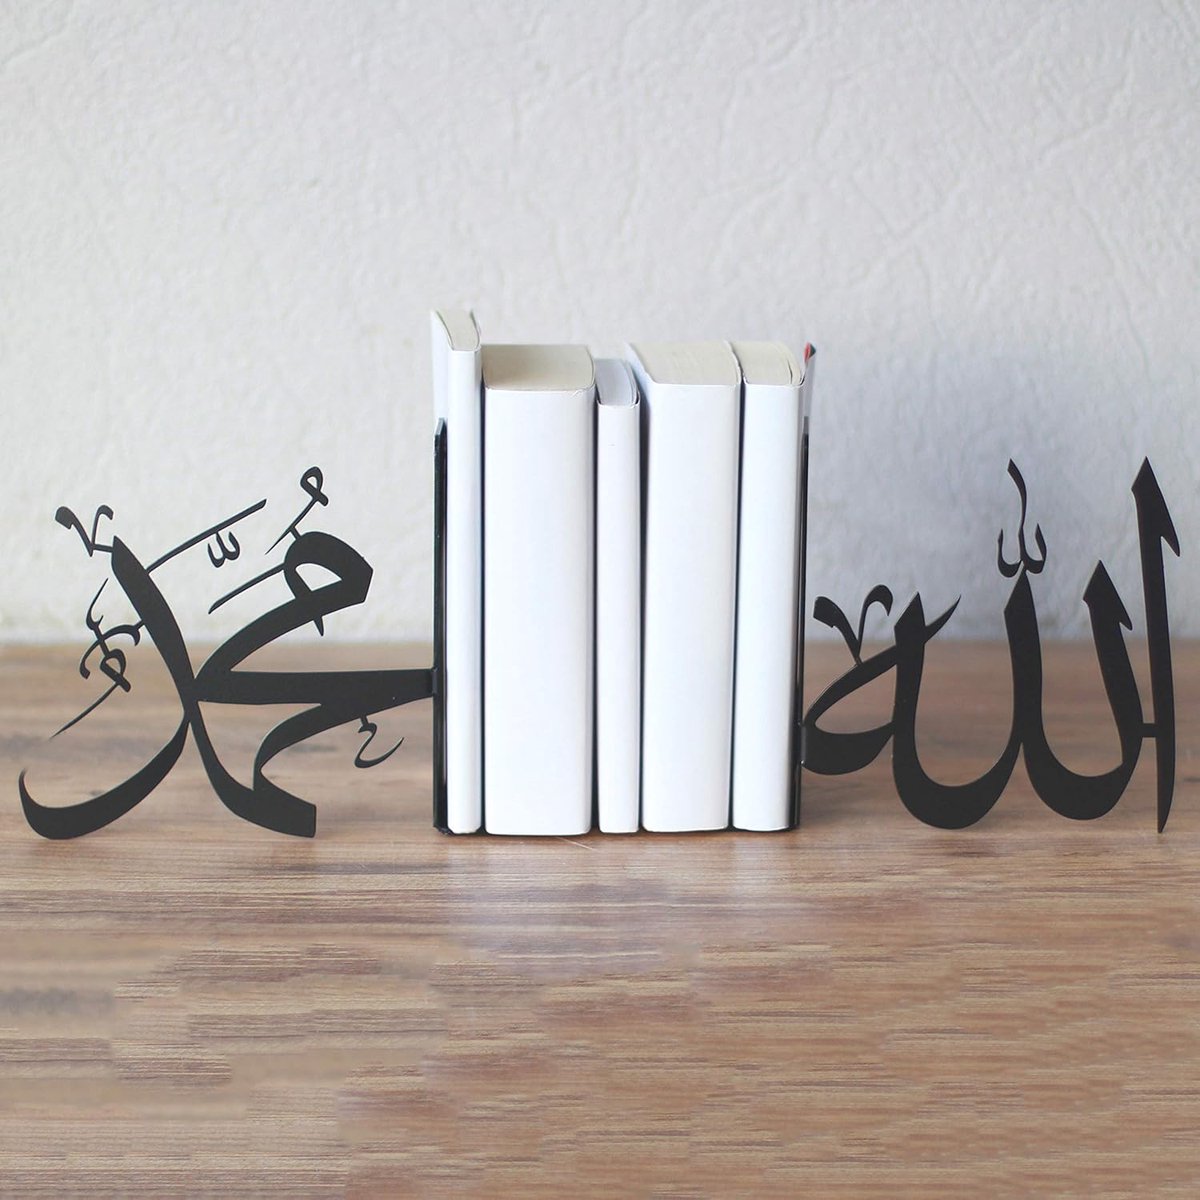 Iwa Concept - Boekensteun - Boekensteun Metaal- Boekenhouder - Boekenhouder standaard - islamitische producten - Ramadan - Ramadan Decoratie - Ramadan versiering - Zwart